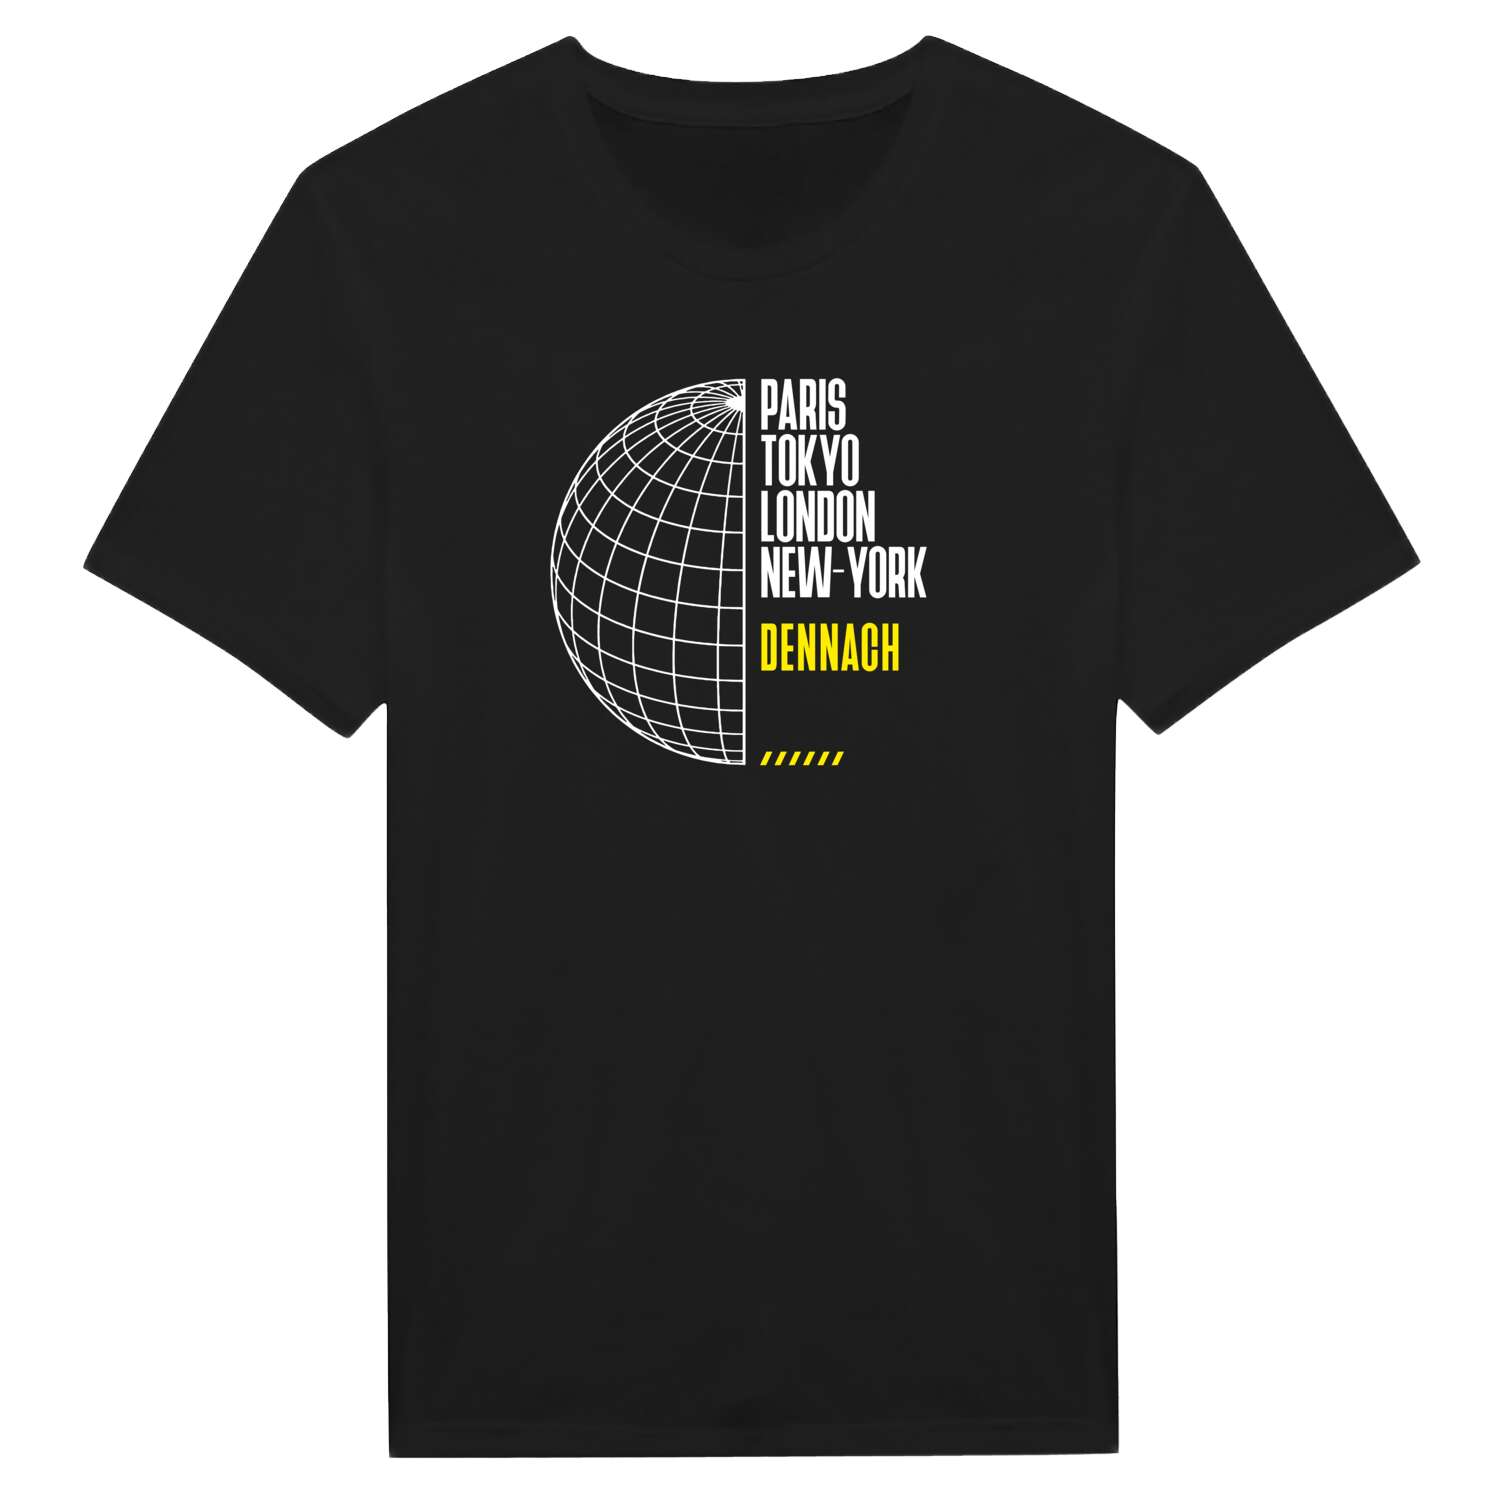 Dennach T-Shirt »Paris Tokyo London«